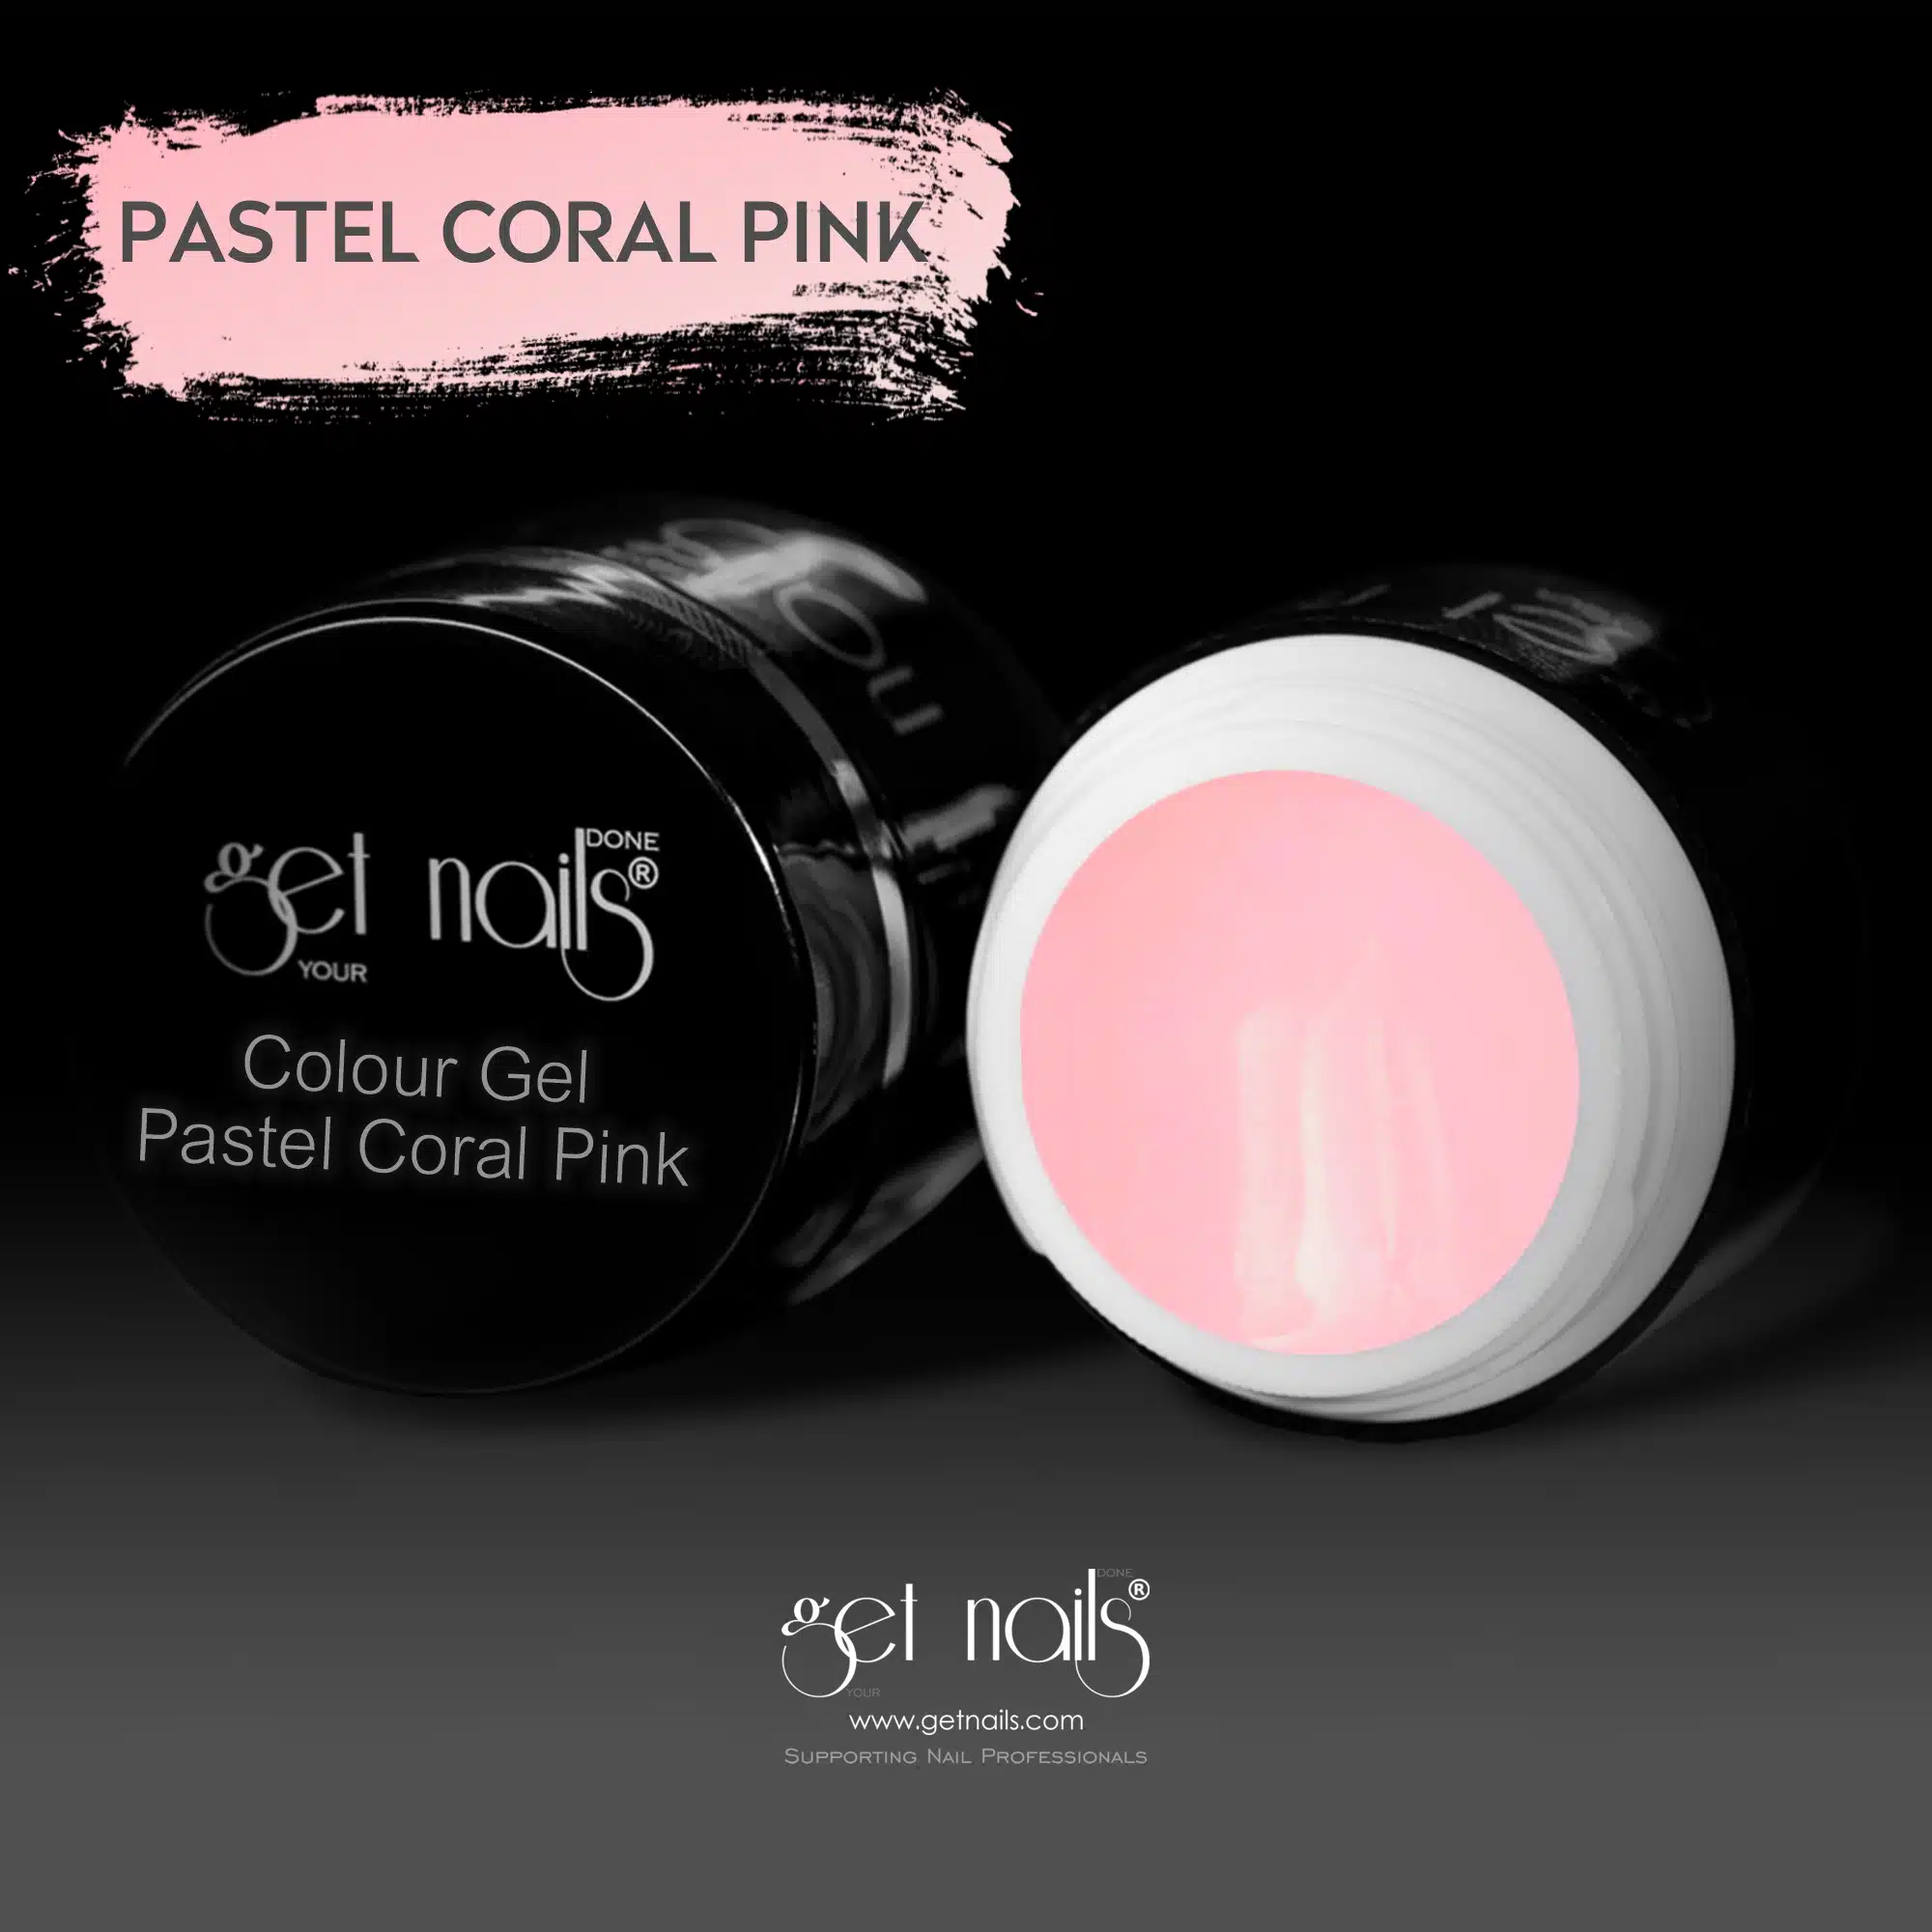 Get Nails Austria - Colour Gel Pastel Coral Pink 5g